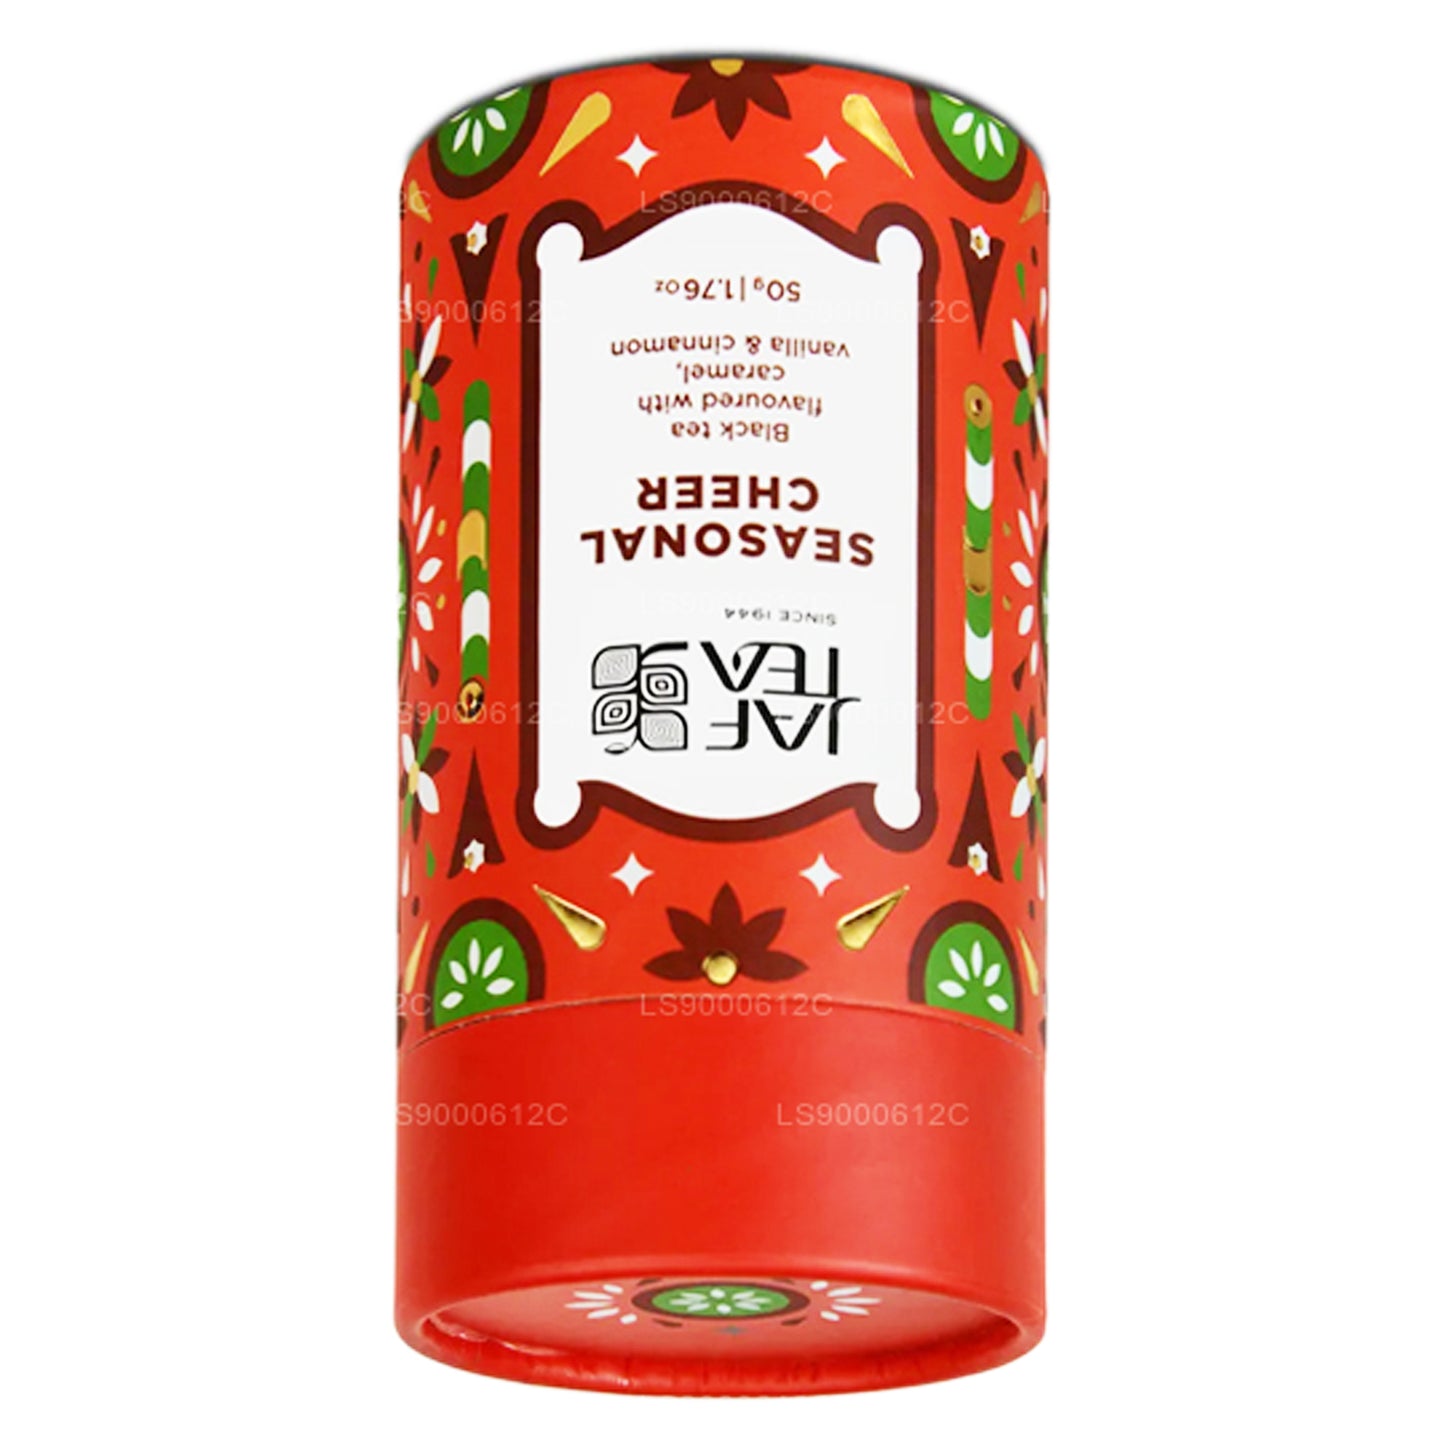 Jaf Çay Mevsimlik Tezahürat - Karamel, Vanilya ve Tarçın Aromalı Siyah Çay (50g)